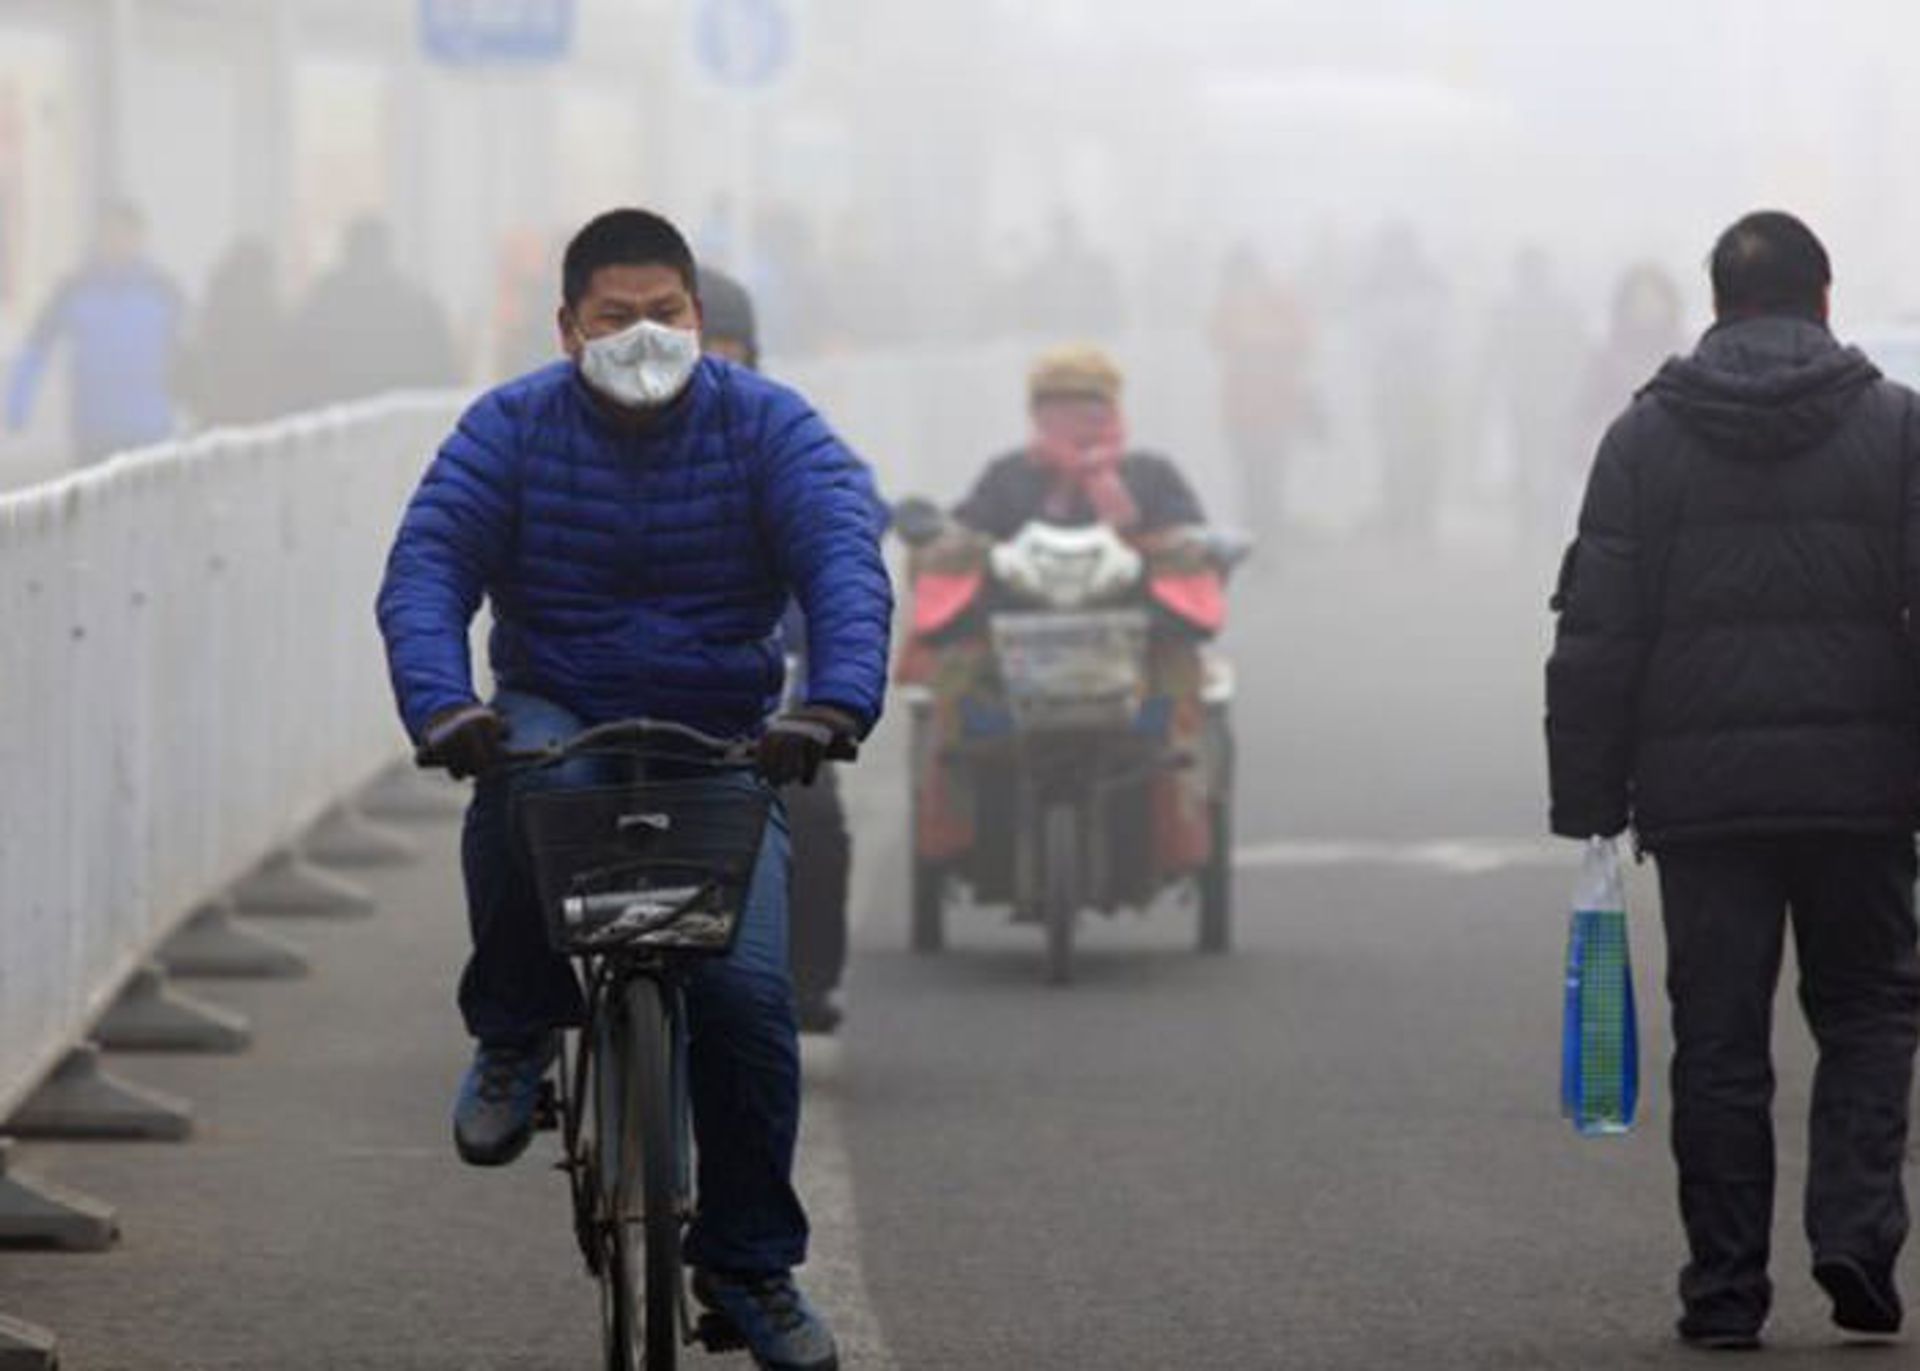 مرجع متخصصين ايران آلودگي هوا در چين